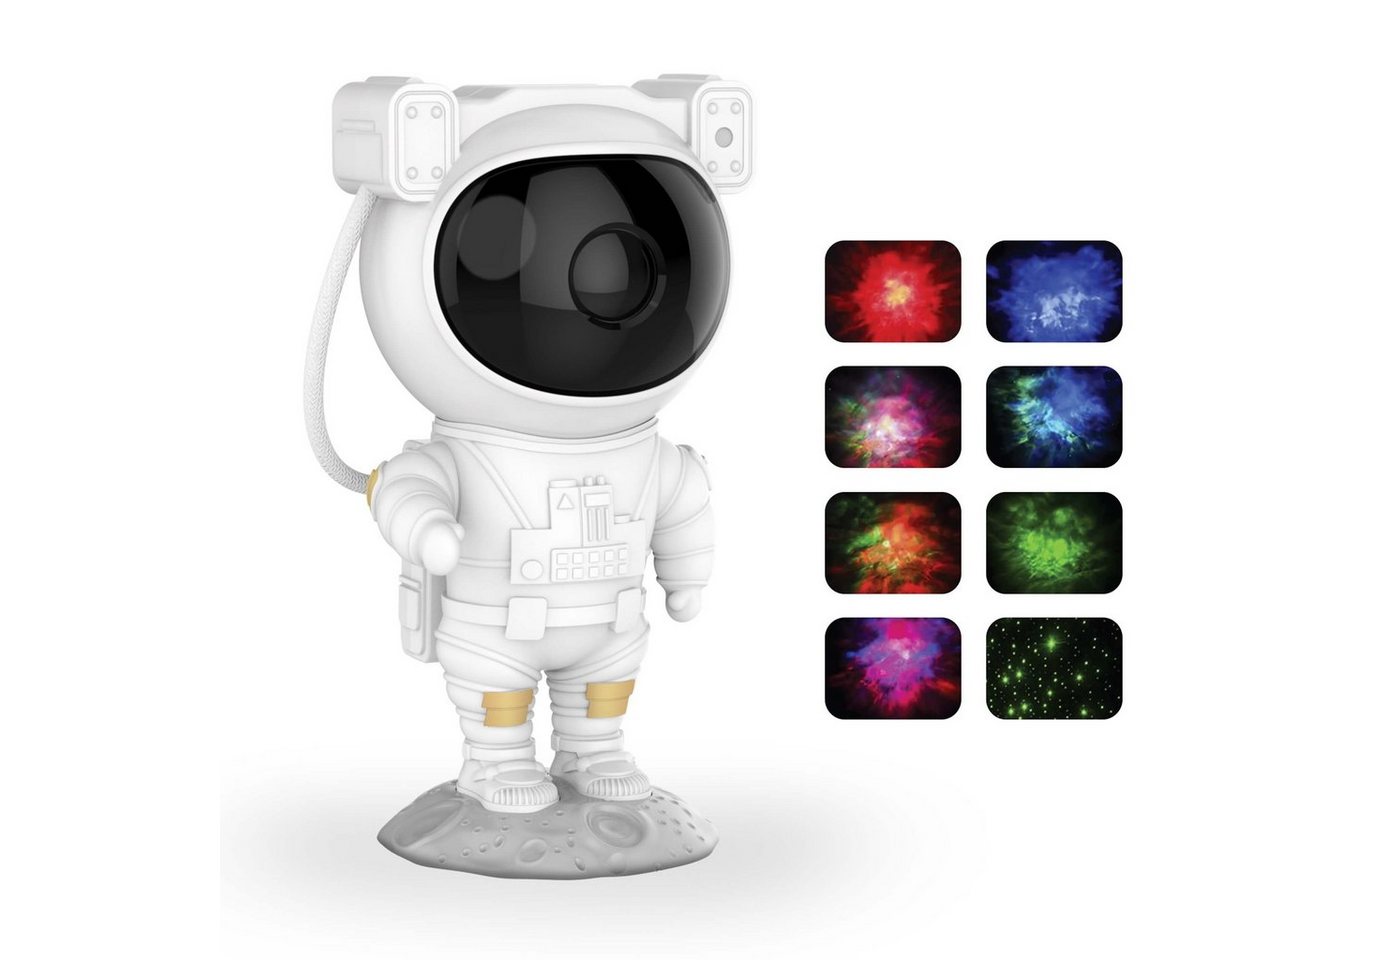 MOB Tischleuchte MOB Galaxy Light - Astronaut von MOB